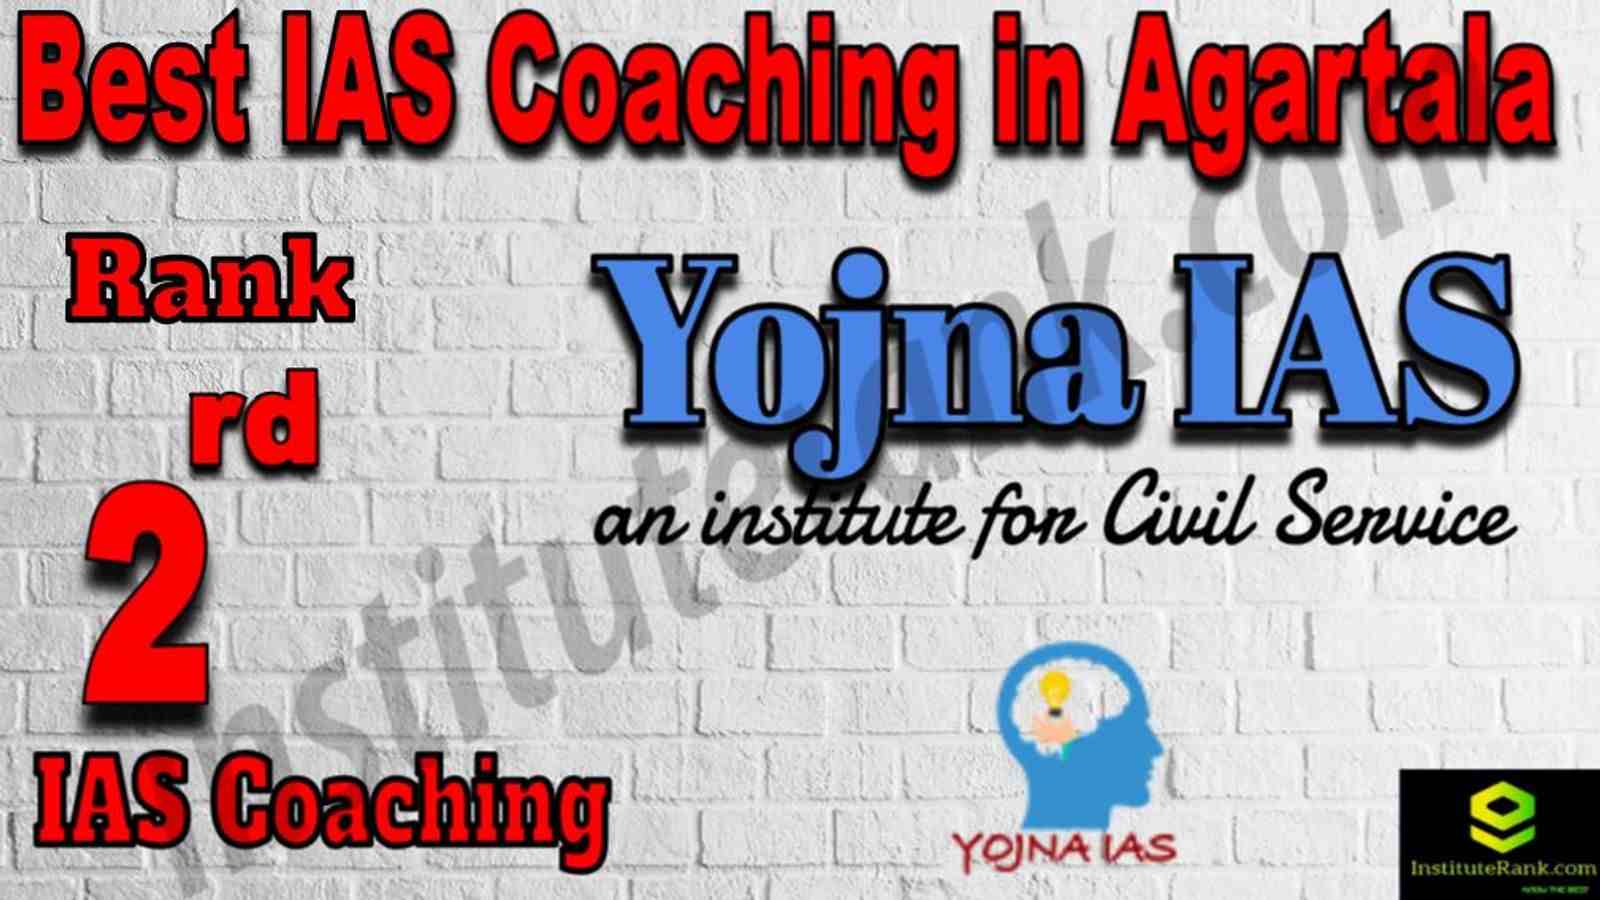 2nd Best IAS Coaching in Agartala